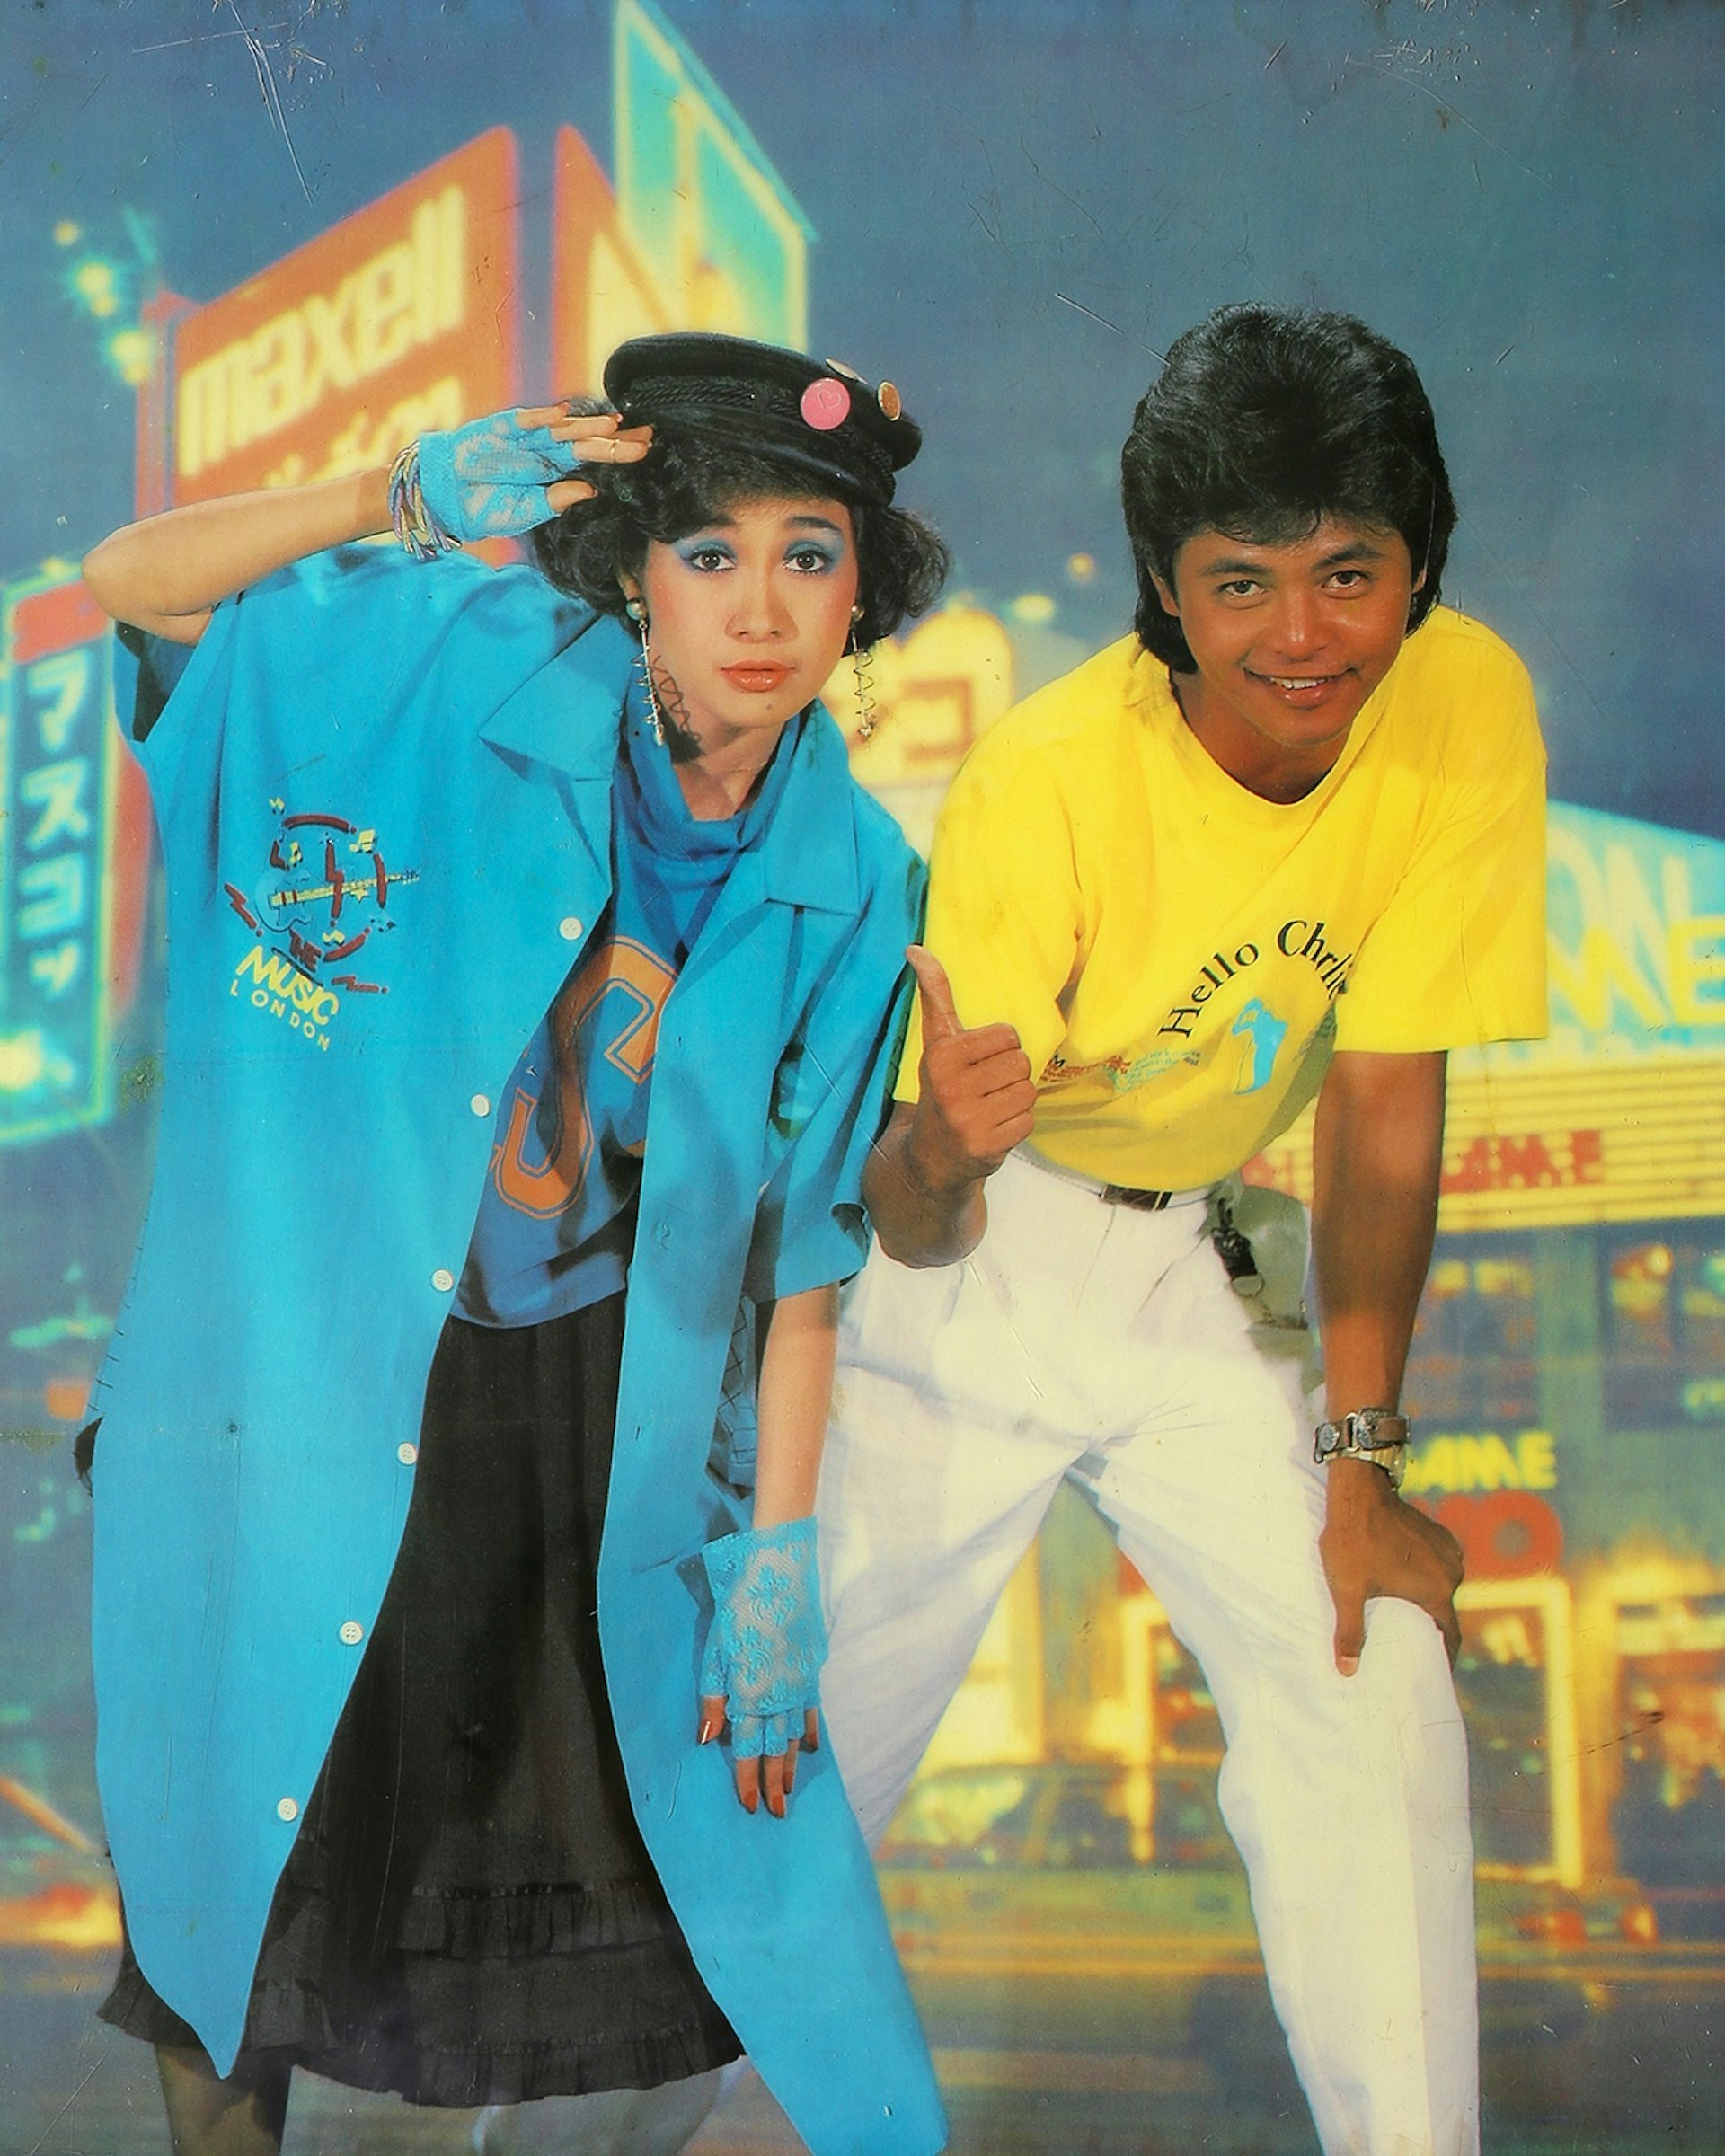 Actors Kyaw Thu & Moh Moh Myint Aung. Taken by U Sann Aung, USA Photo Studio, Yangon 1989/1990